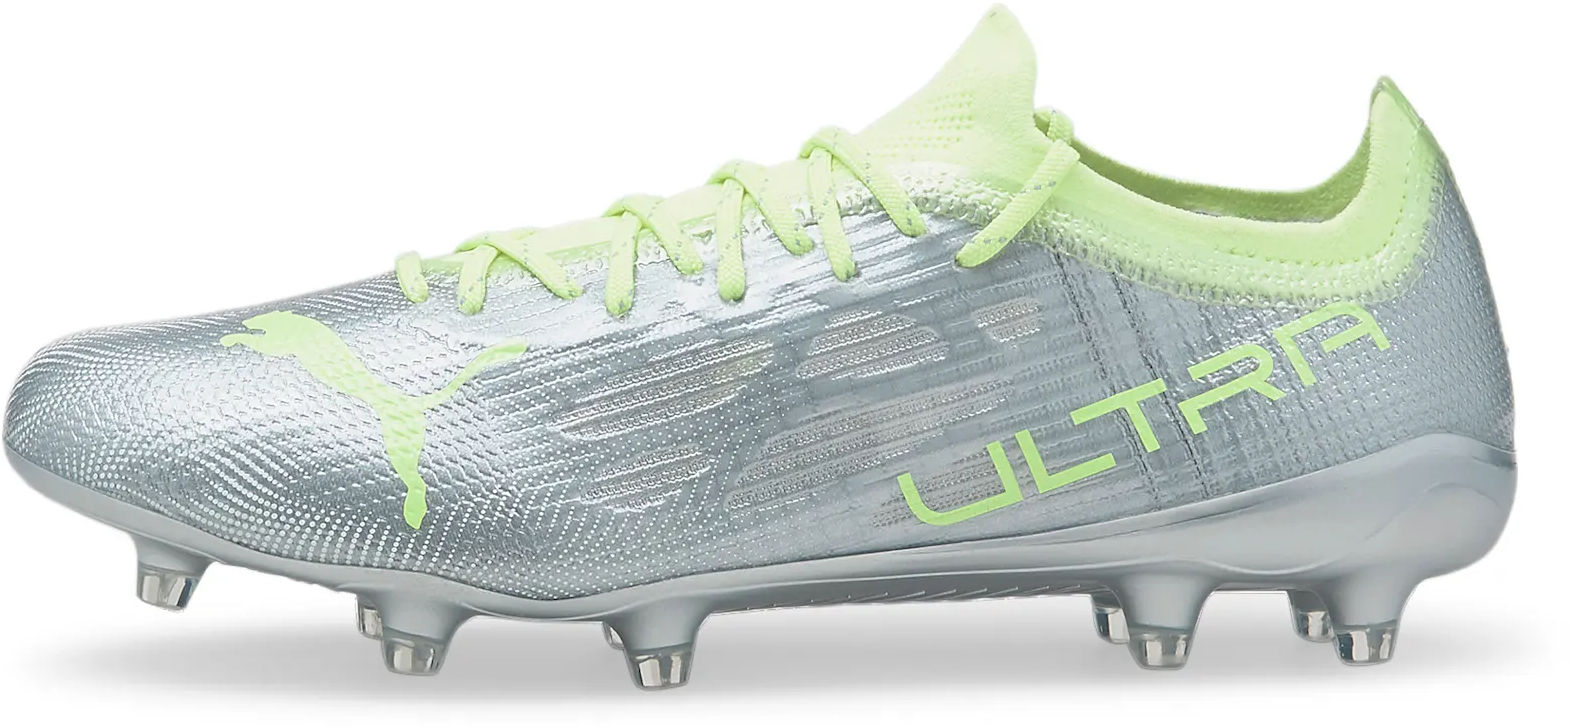 Nogometni čevlji Puma ULTRA 1.4 FG/AG Wns